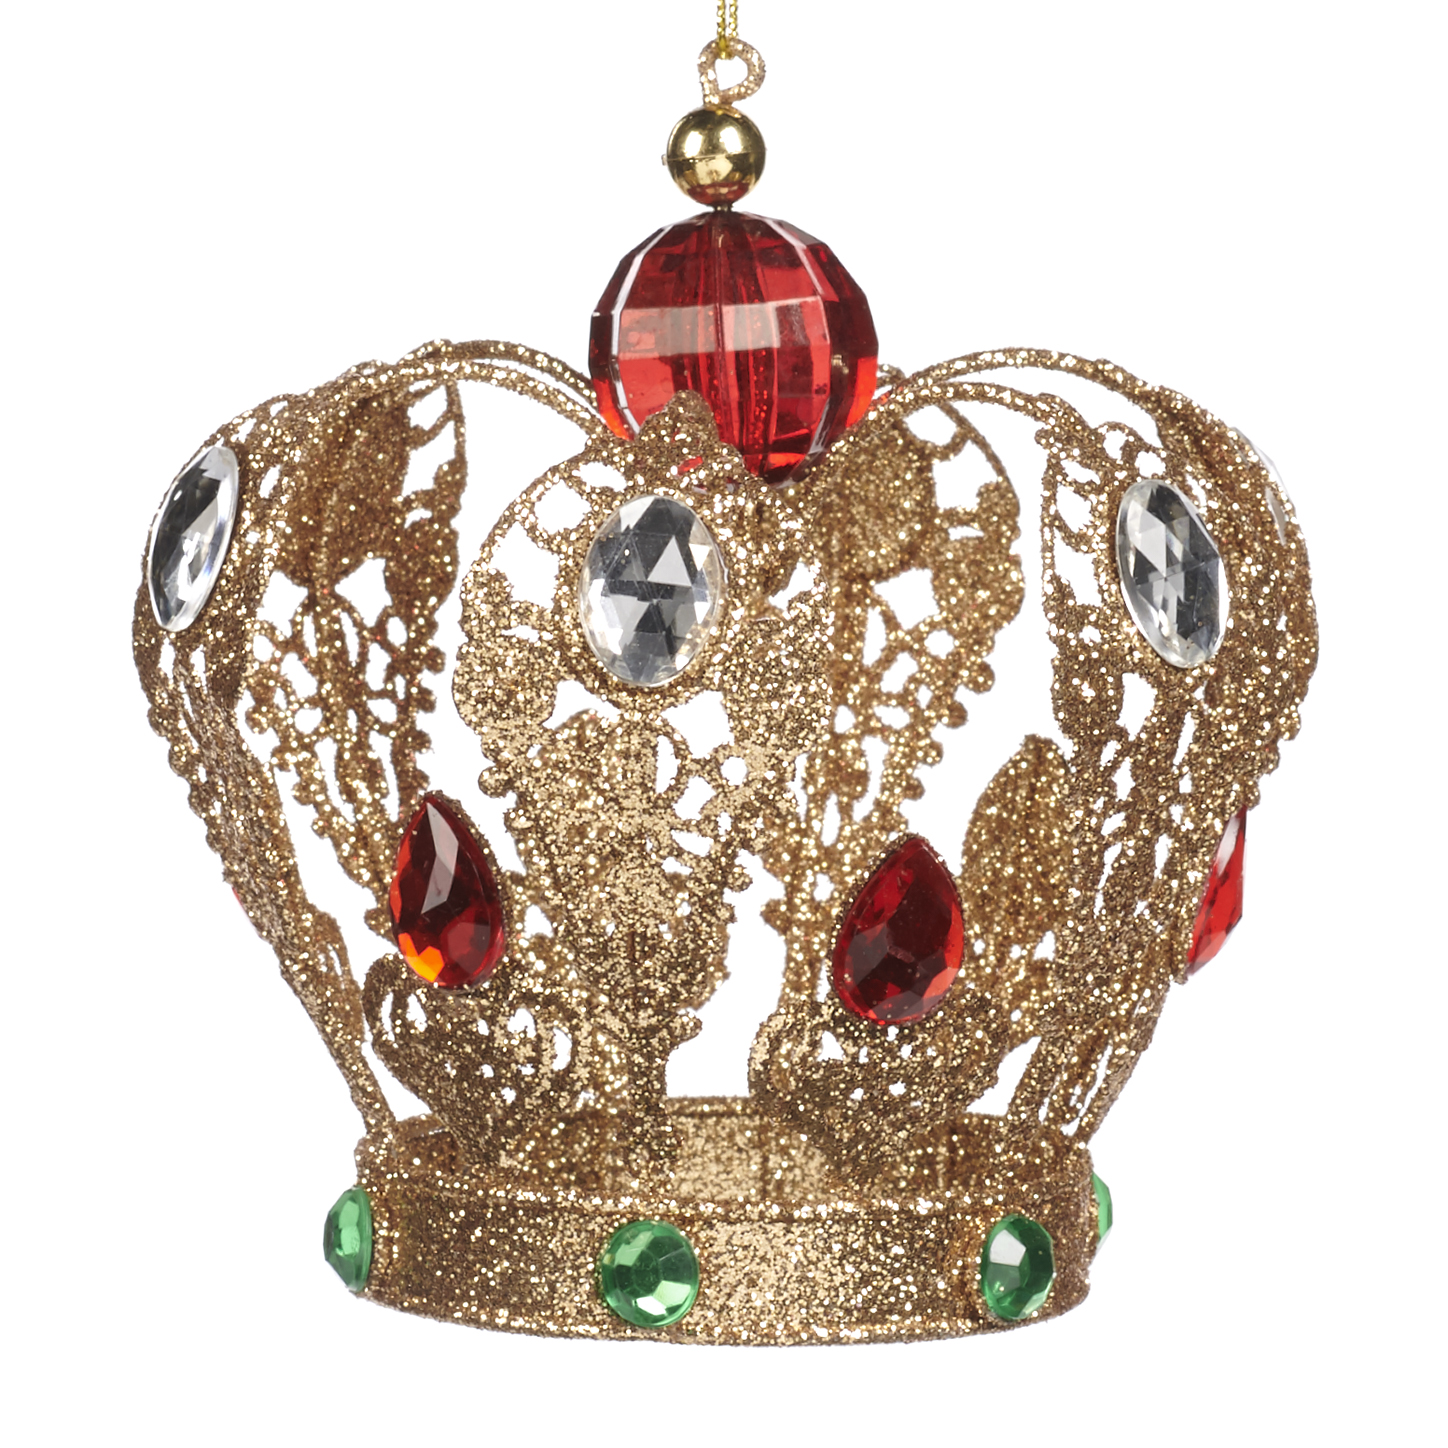 Decoro natalizio corona gioiello con pietre oro e rosso - H. 11.5 cm - Collezione 2022 - Goodwill